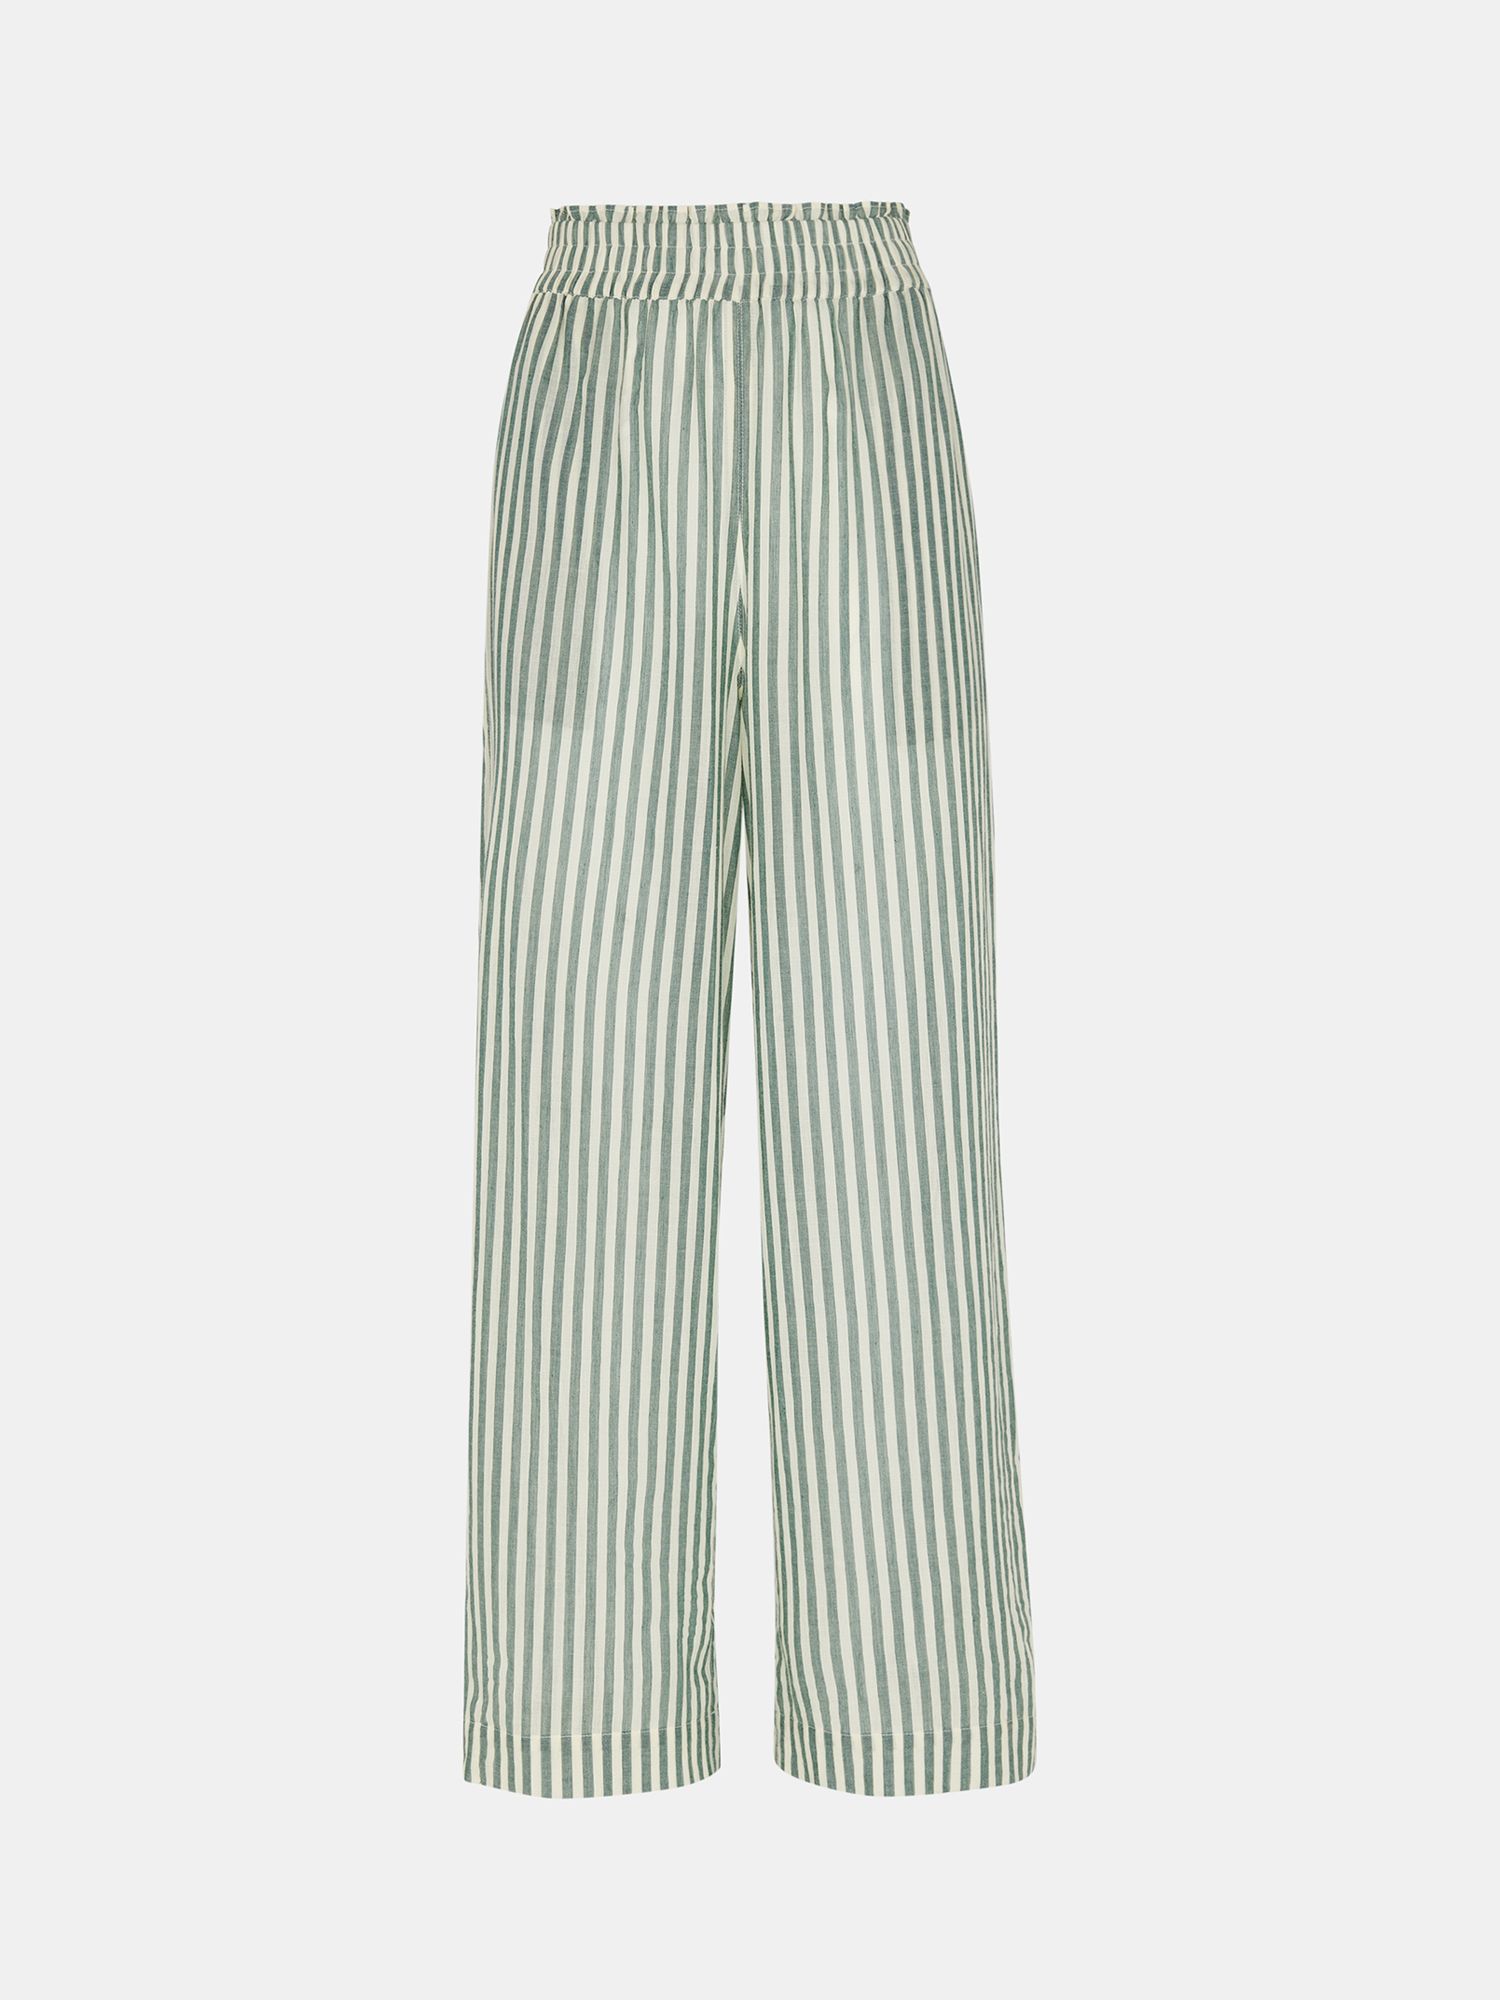 Whistles Stripe Beach Cotton Trousers, Green/White, XS